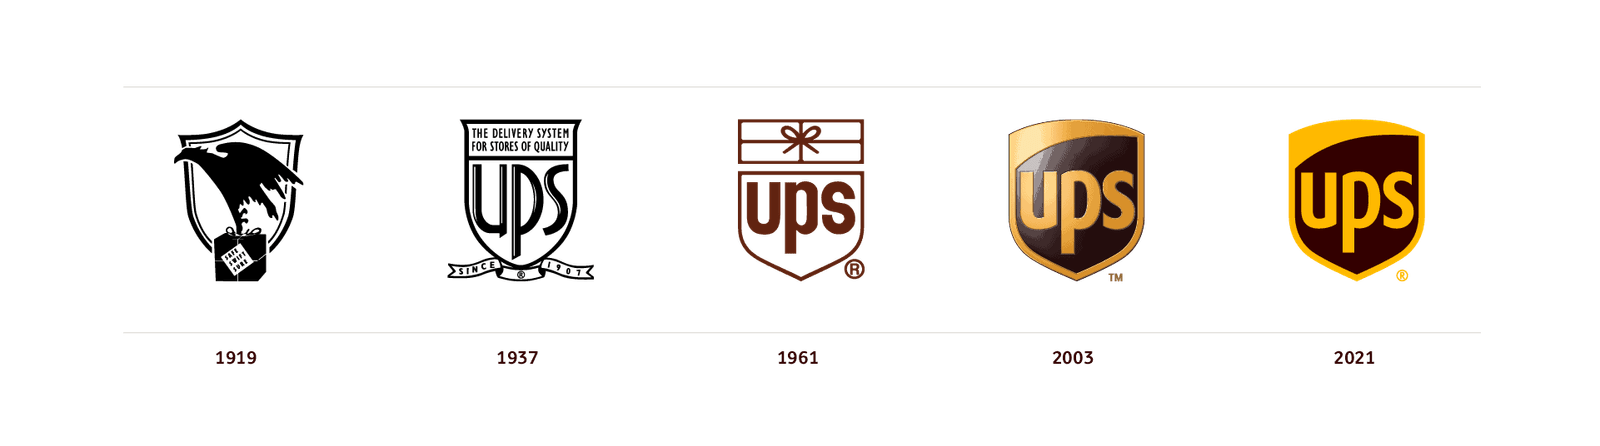 éléments de marque : Fig. 20. Développement du logo UPS